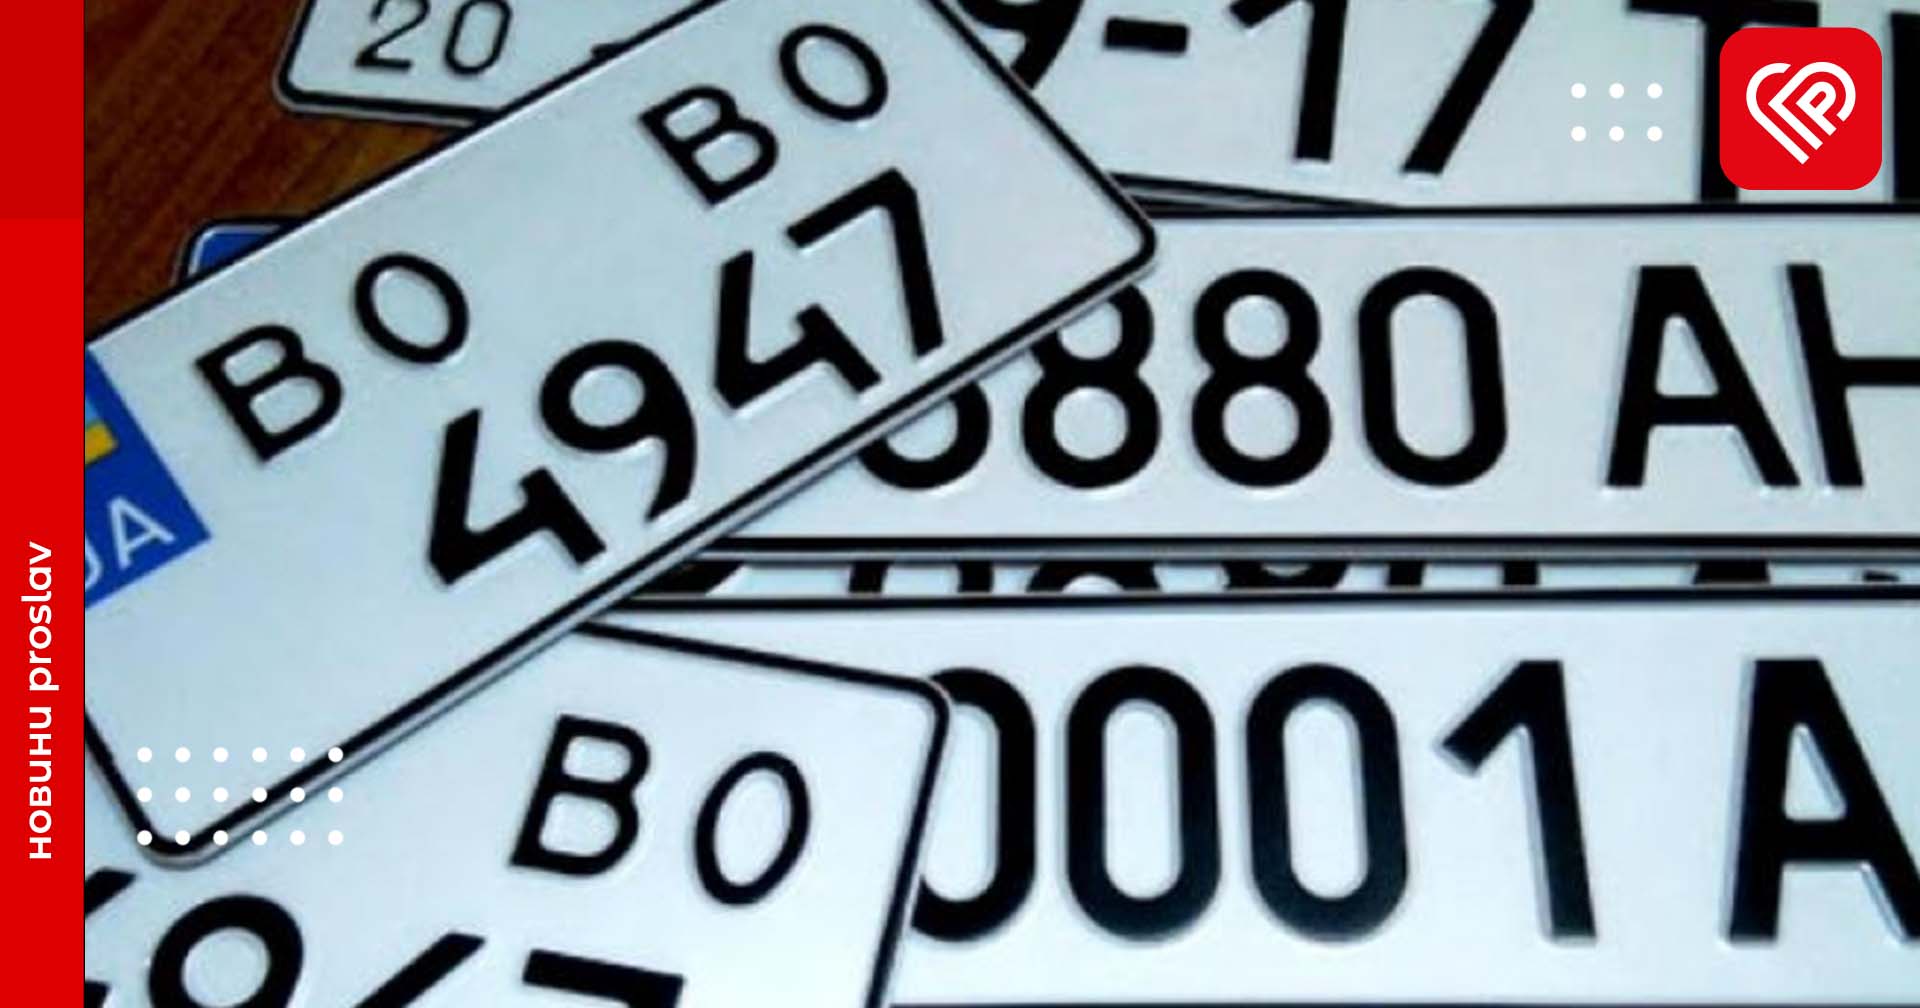 Влітку на водіїв чекає приємне нововведення: власники авто зможуть онлайн замовляти номерні знаки